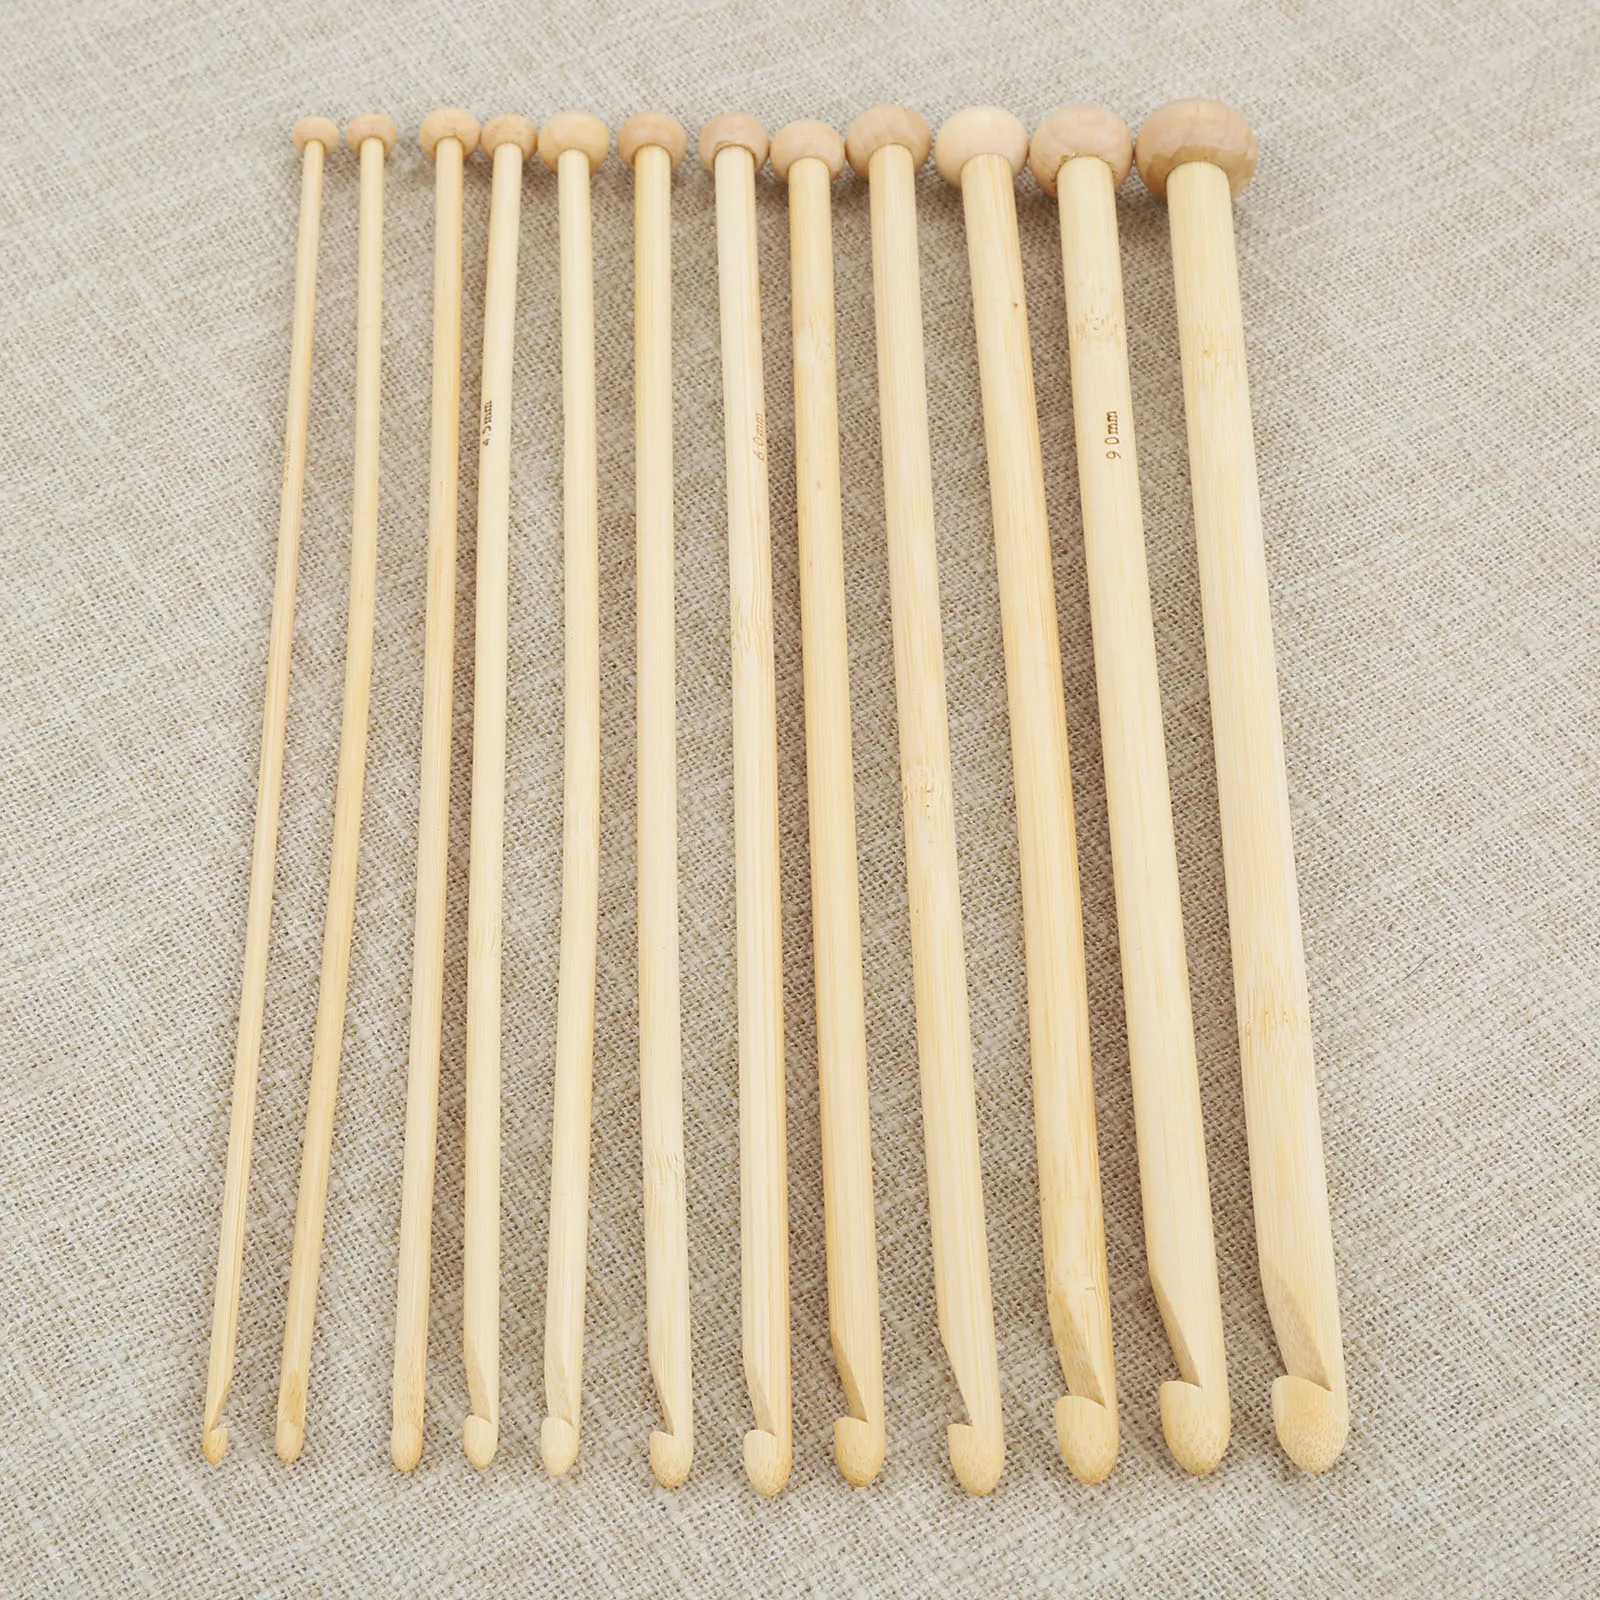 12 Pcs 10mm - 3mm Naturais de Bambu Único Apontado Afegão Tunisian Frisado Crochê Agulhas de Tricô com 25 cm de Longa Mão de Costura Ferramenta DIY